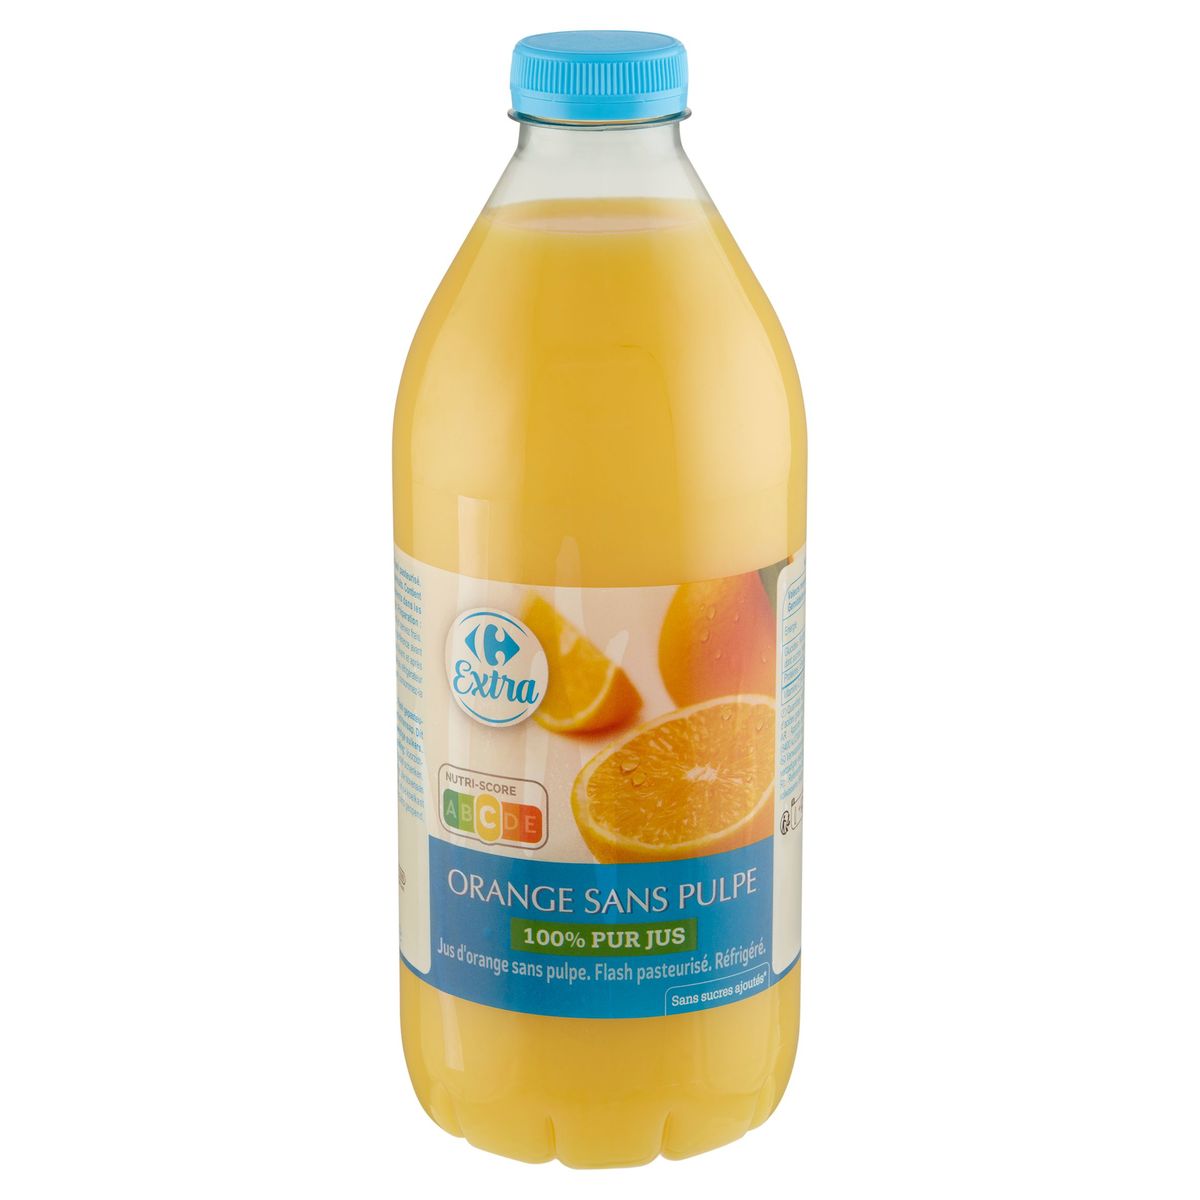 Carrefour Extra 100% Pur Jus Orange sans Pulpe 1.5 L